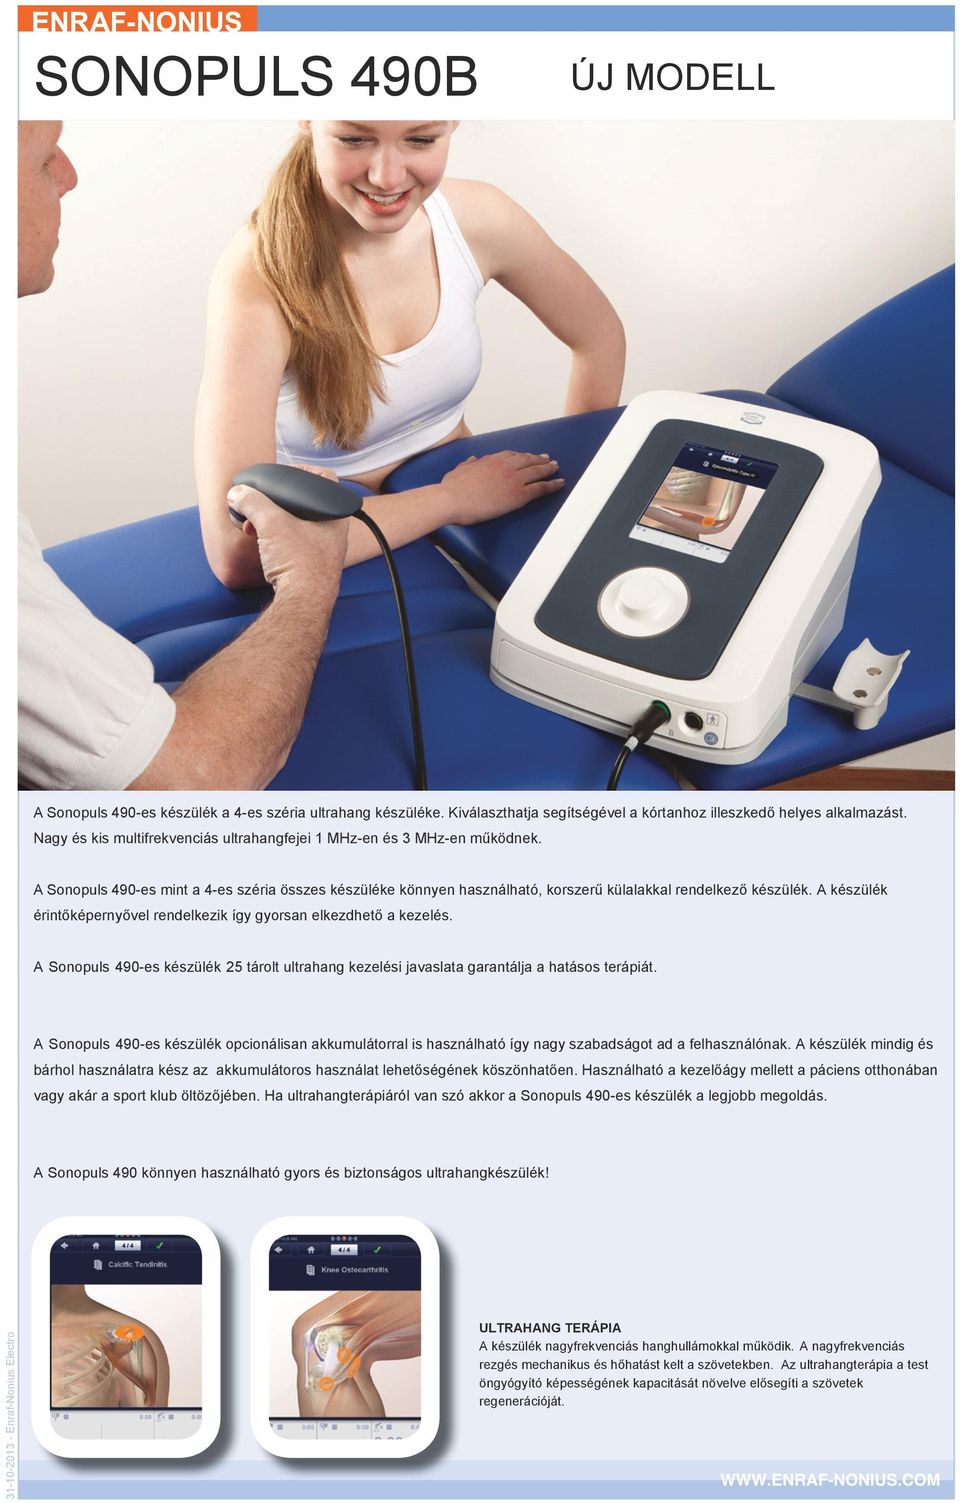 A készülék érintőképernyővel rendelkezik így gyorsan elkezdhető a kezelés. A Sonopuls 490-es készülék 25 tárolt ultrahang kezelési javaslata garantálja a hatásos terápiát.